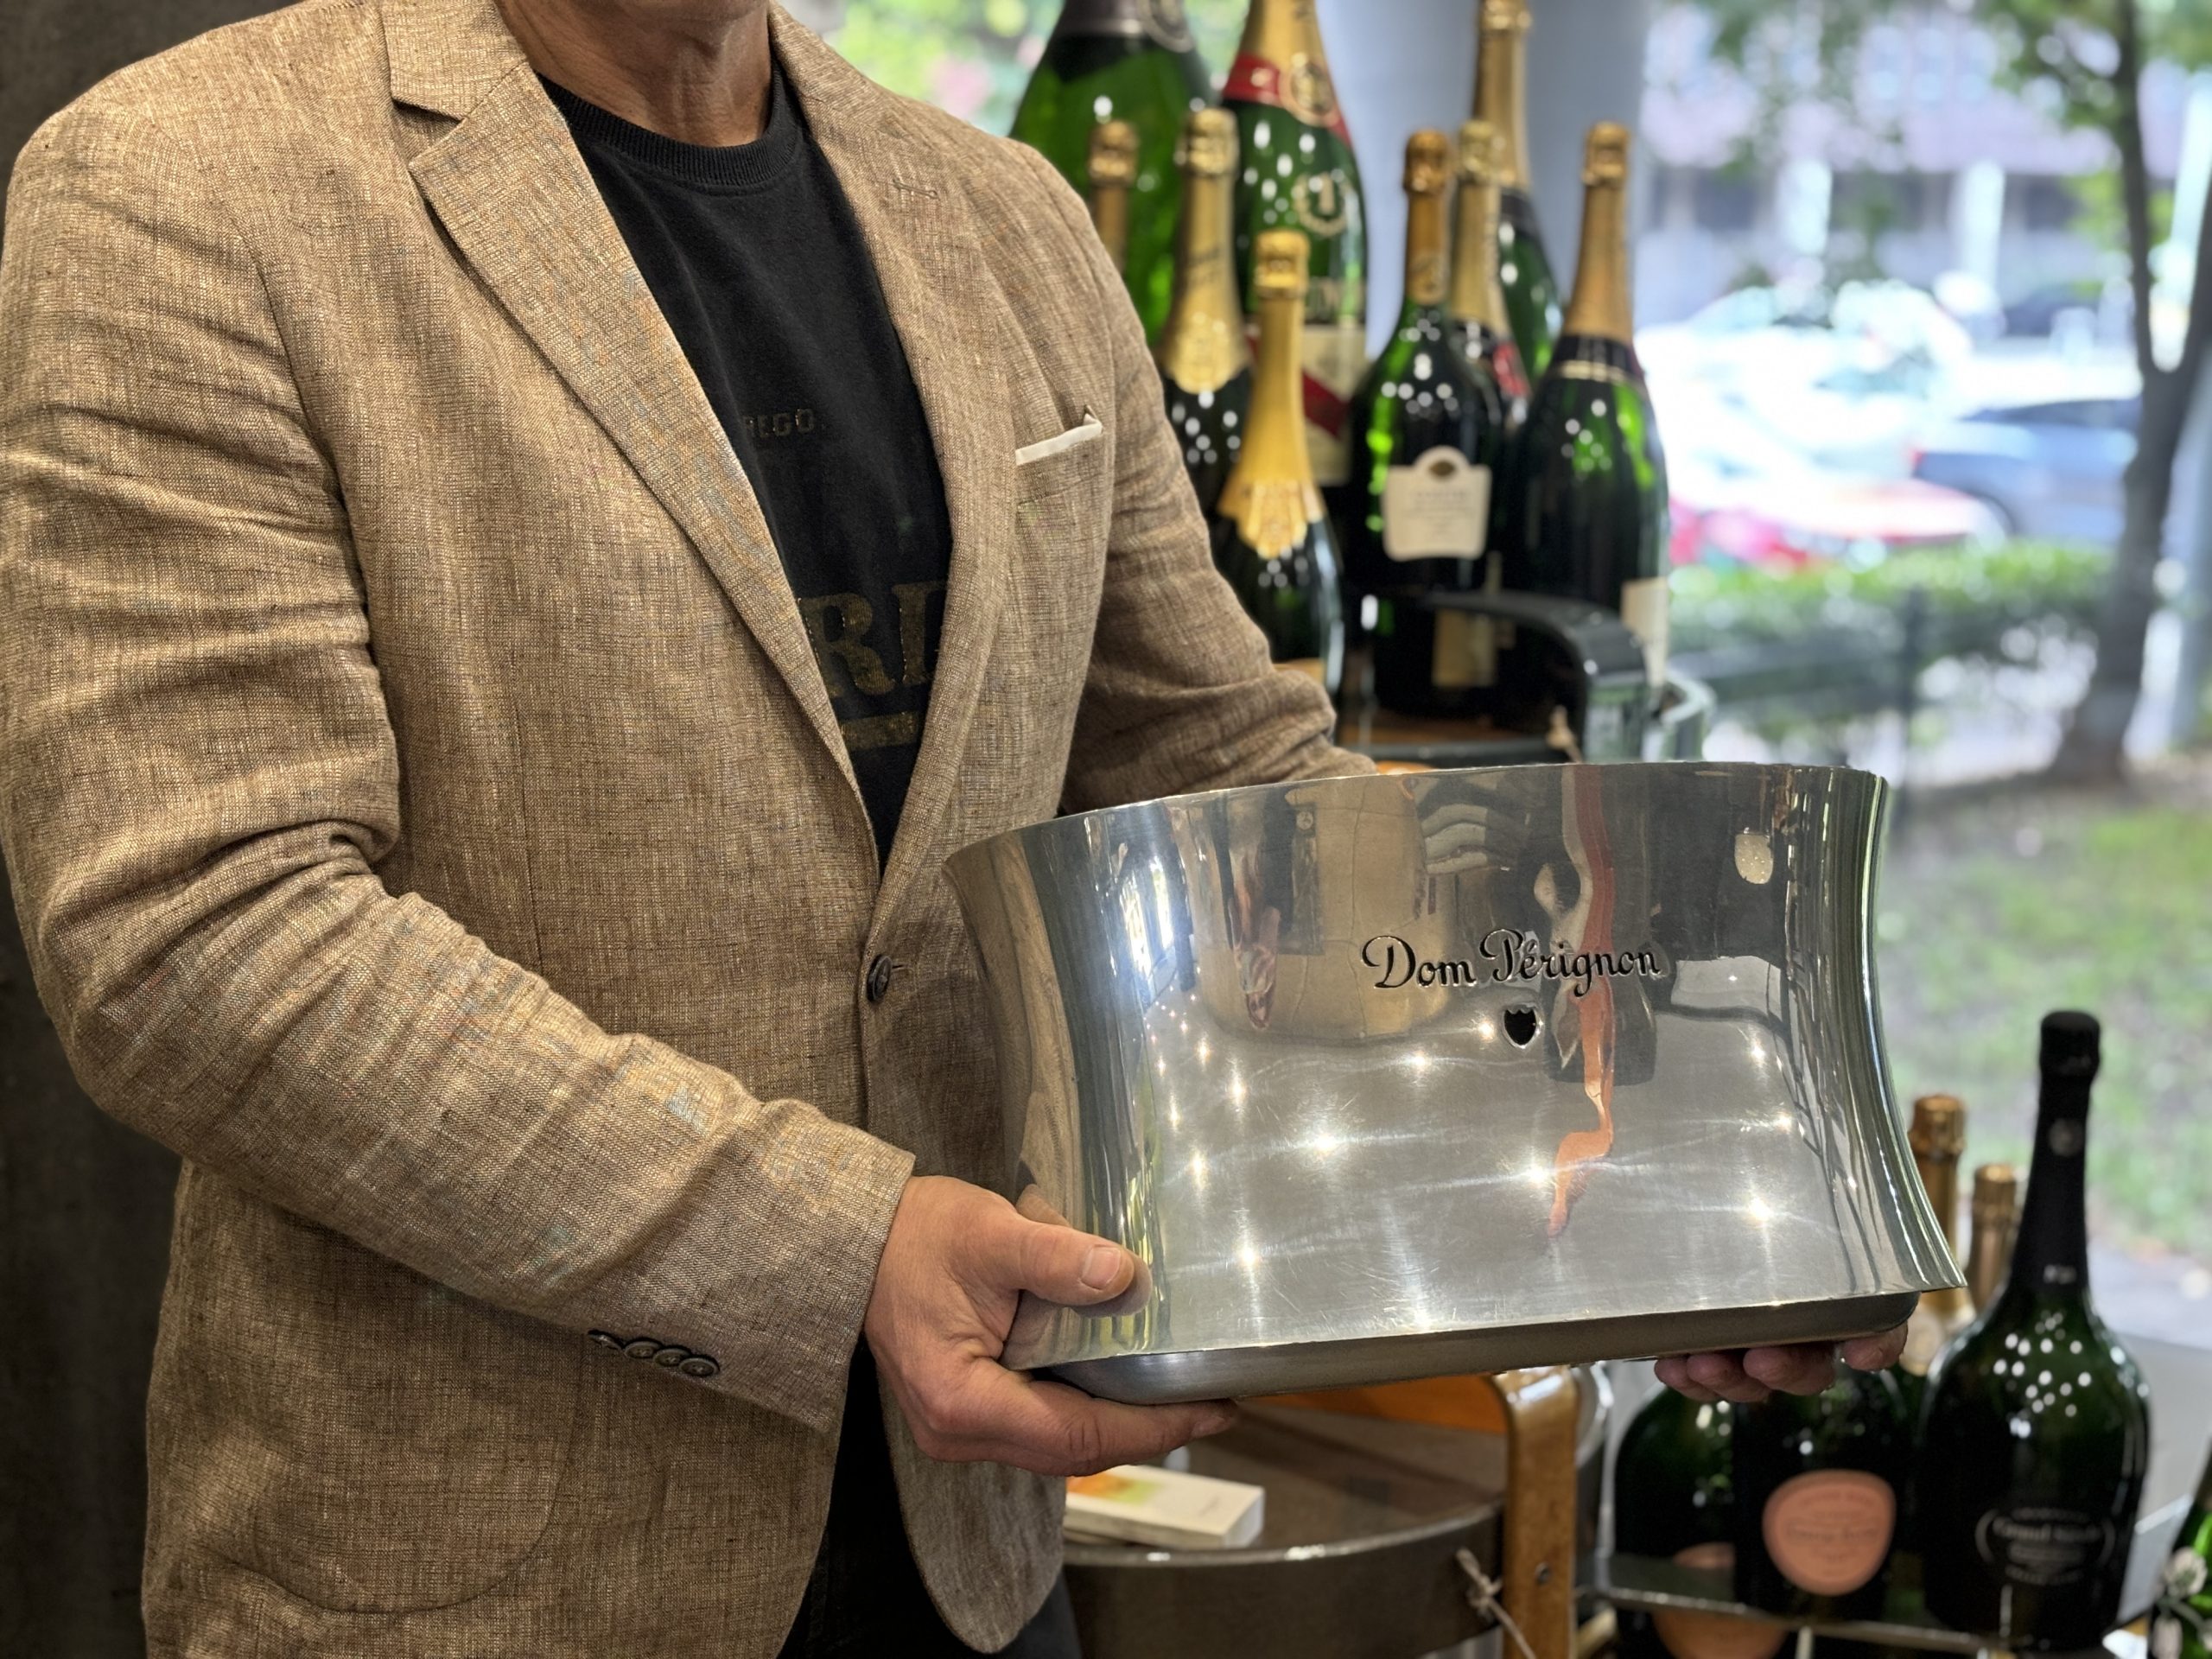 SOLD / ELADVA – Dom Pérignon Champagne dupla magnum pezsgőhűtő by Martin Szekely, Royal Sengalor Pewter ónöntvény – 321.900.-Ft